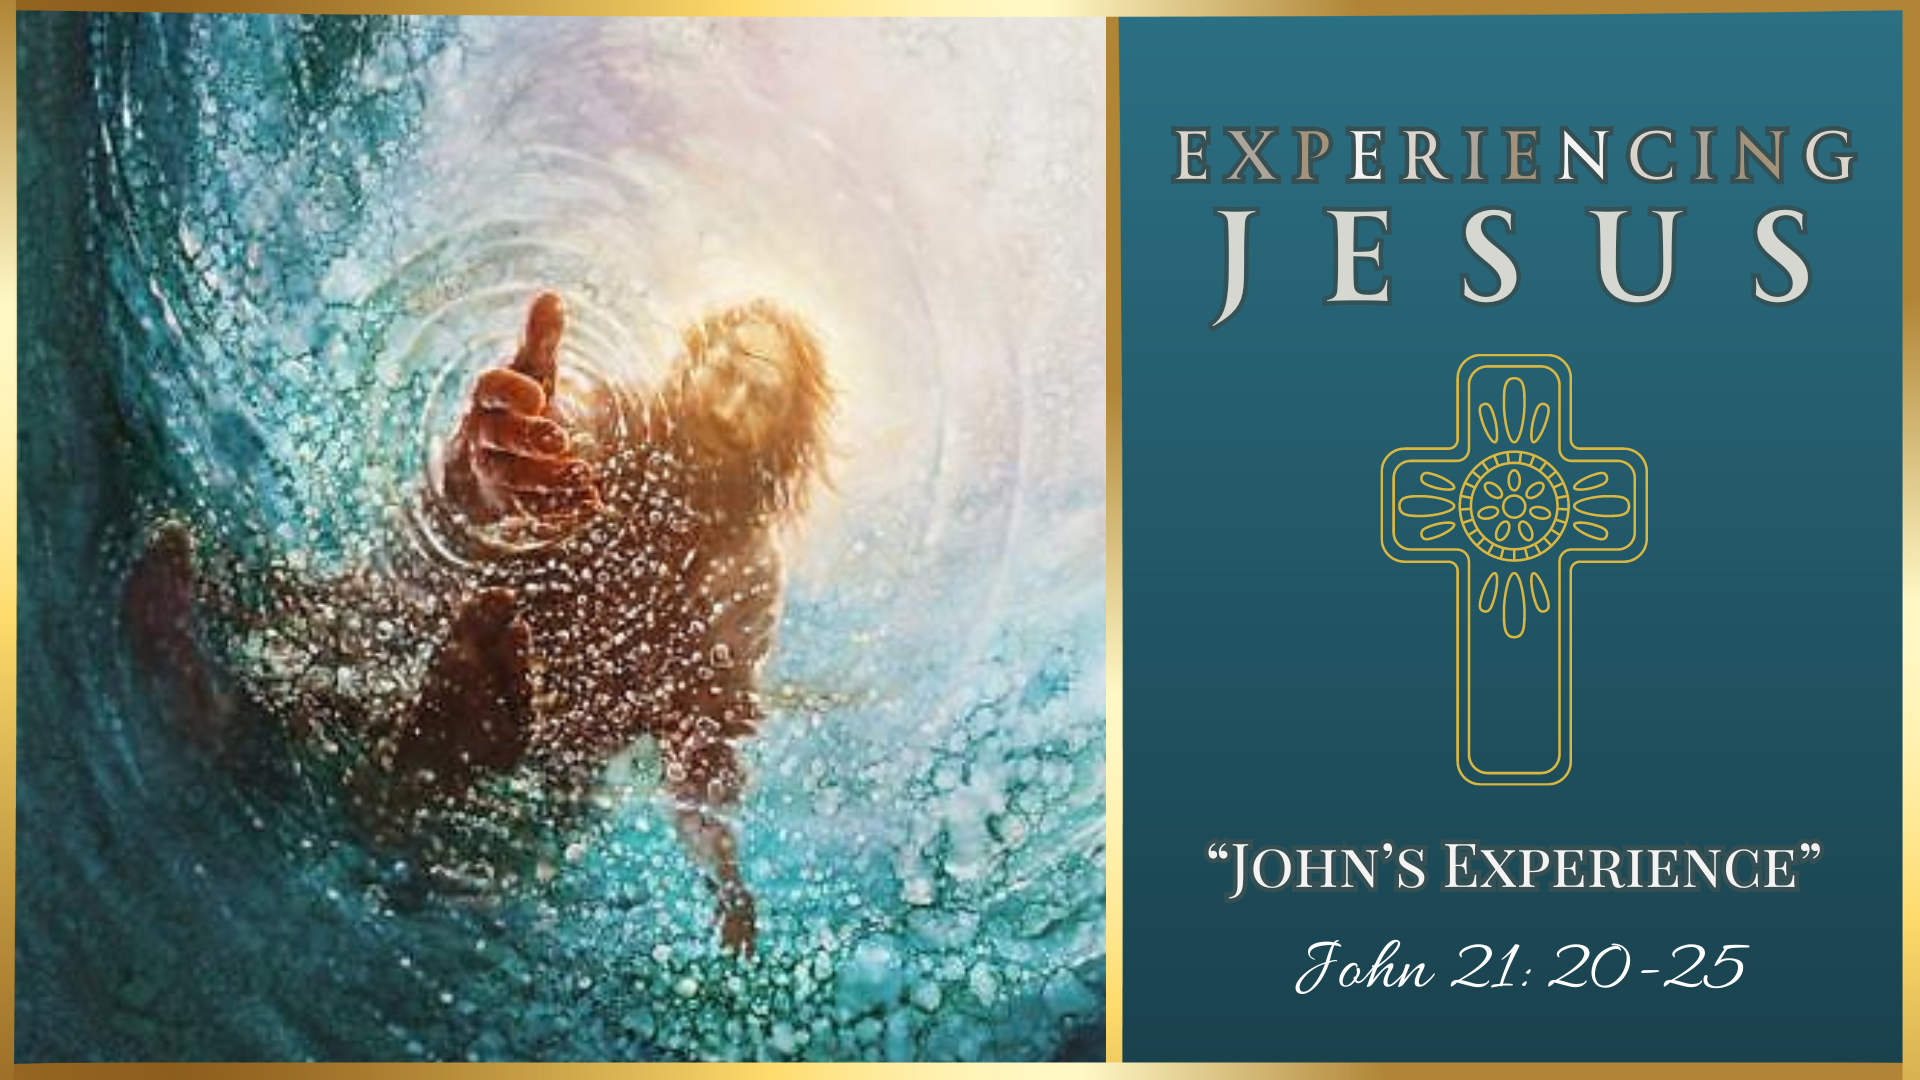 John’s Experience